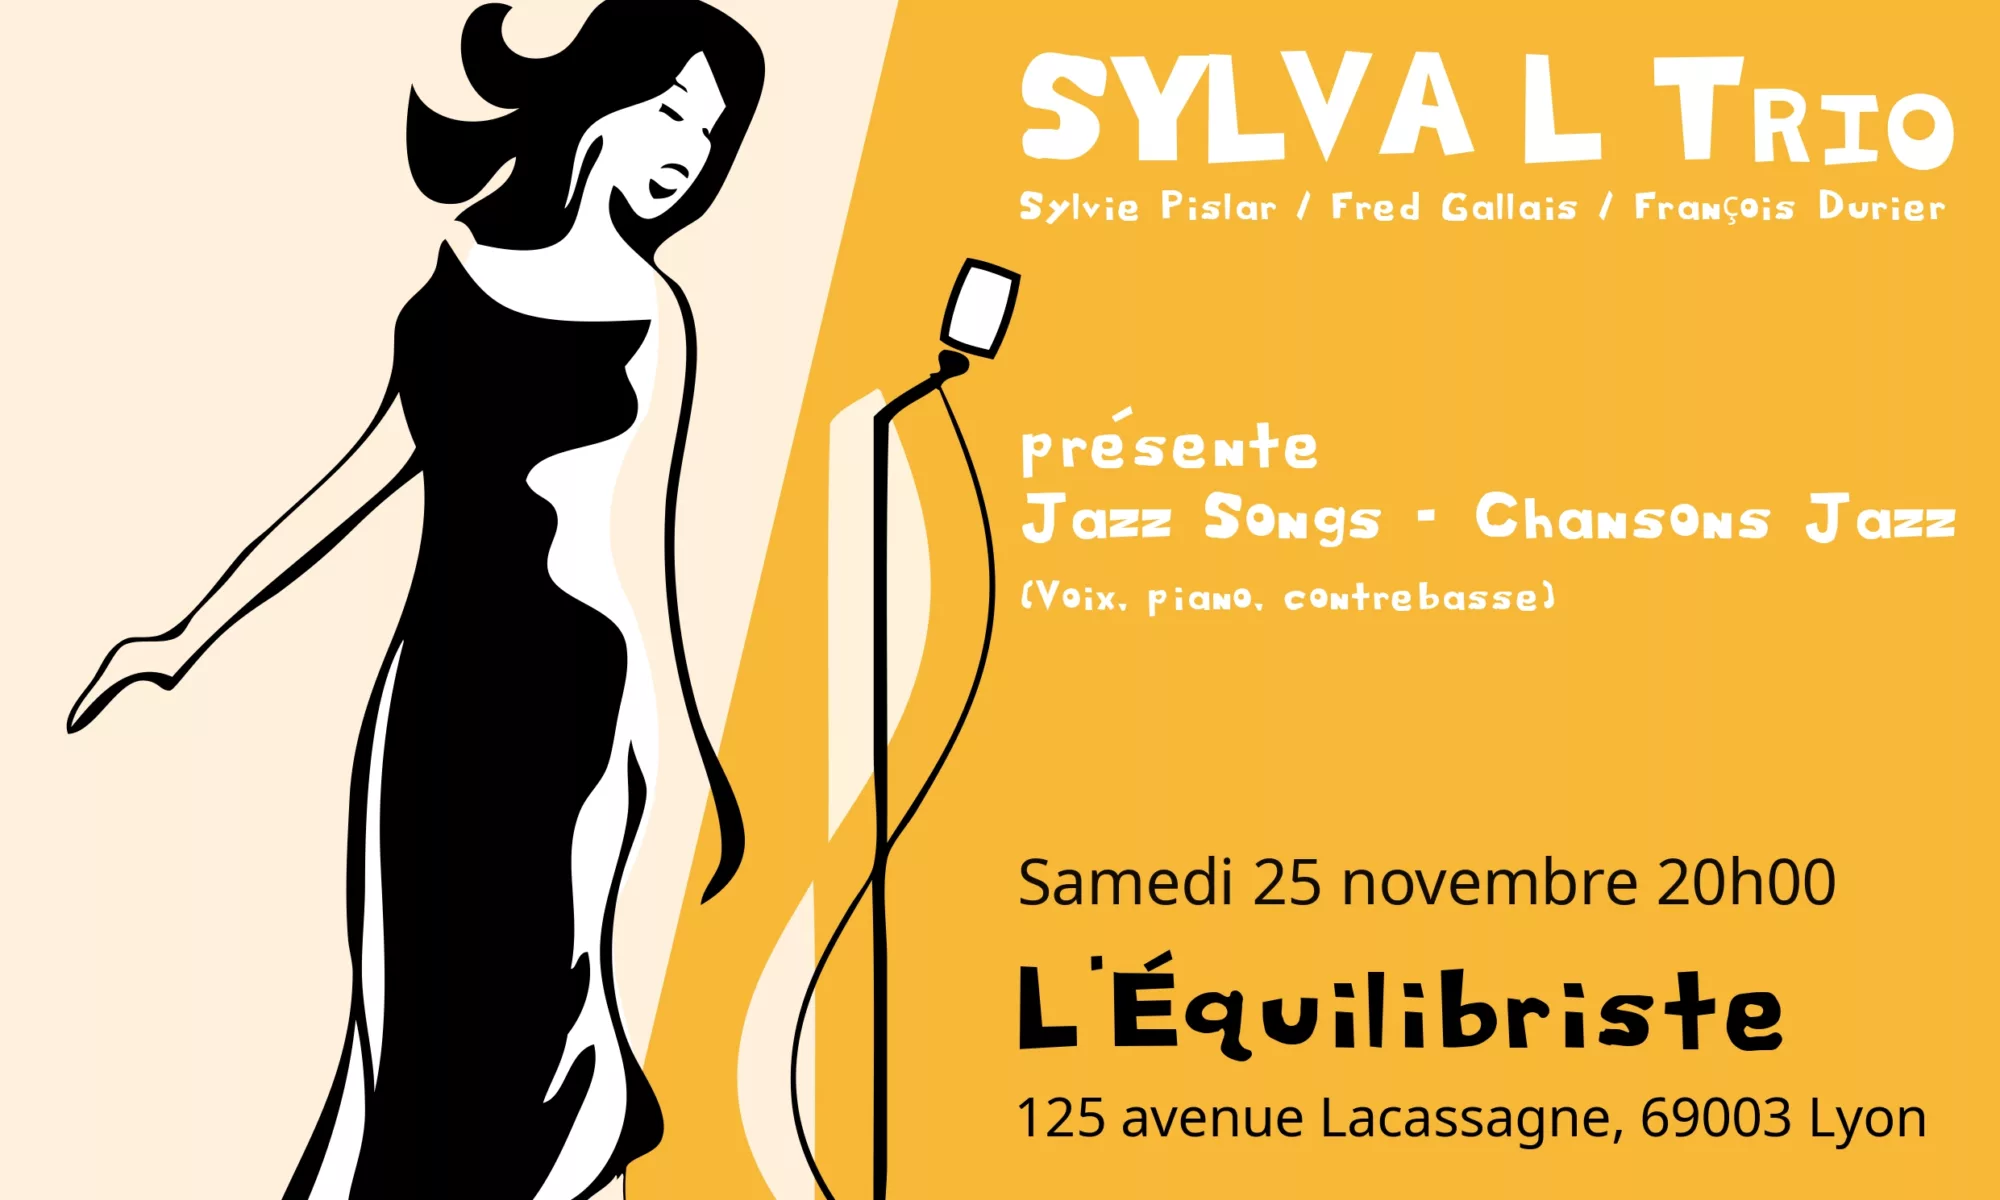 Sylva-L-trio-affiche-2023-Equilibriste-v2_page-0001